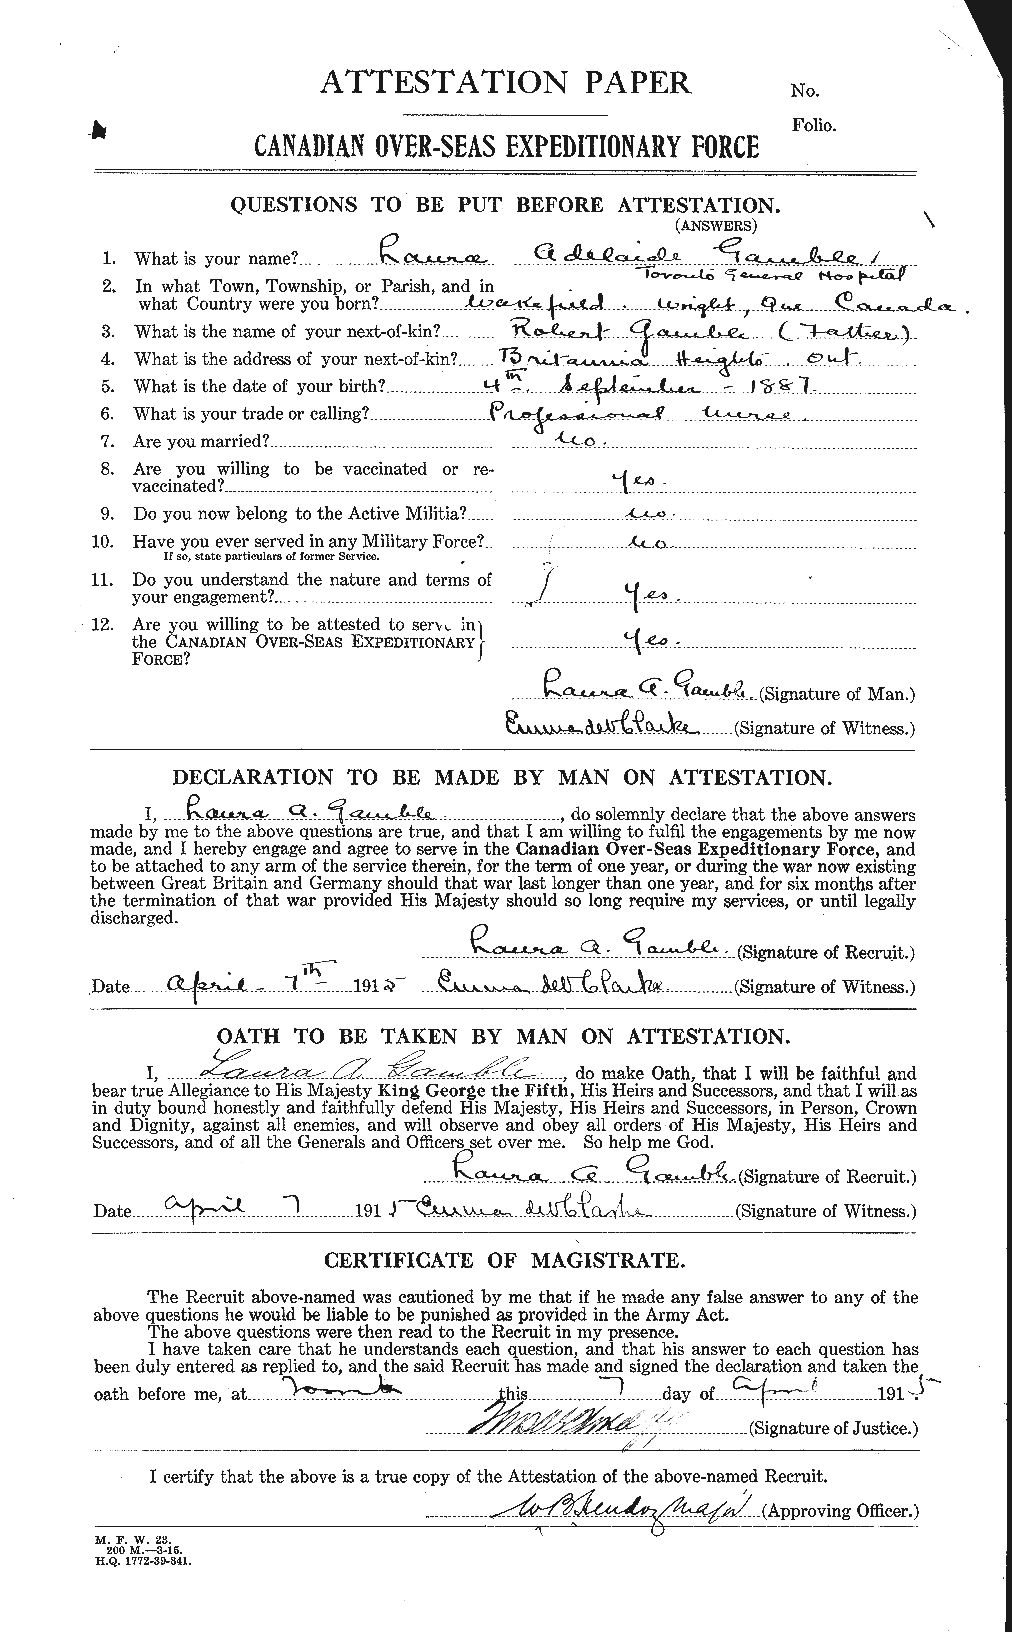 Dossiers du Personnel de la Première Guerre mondiale - CEC 238861a